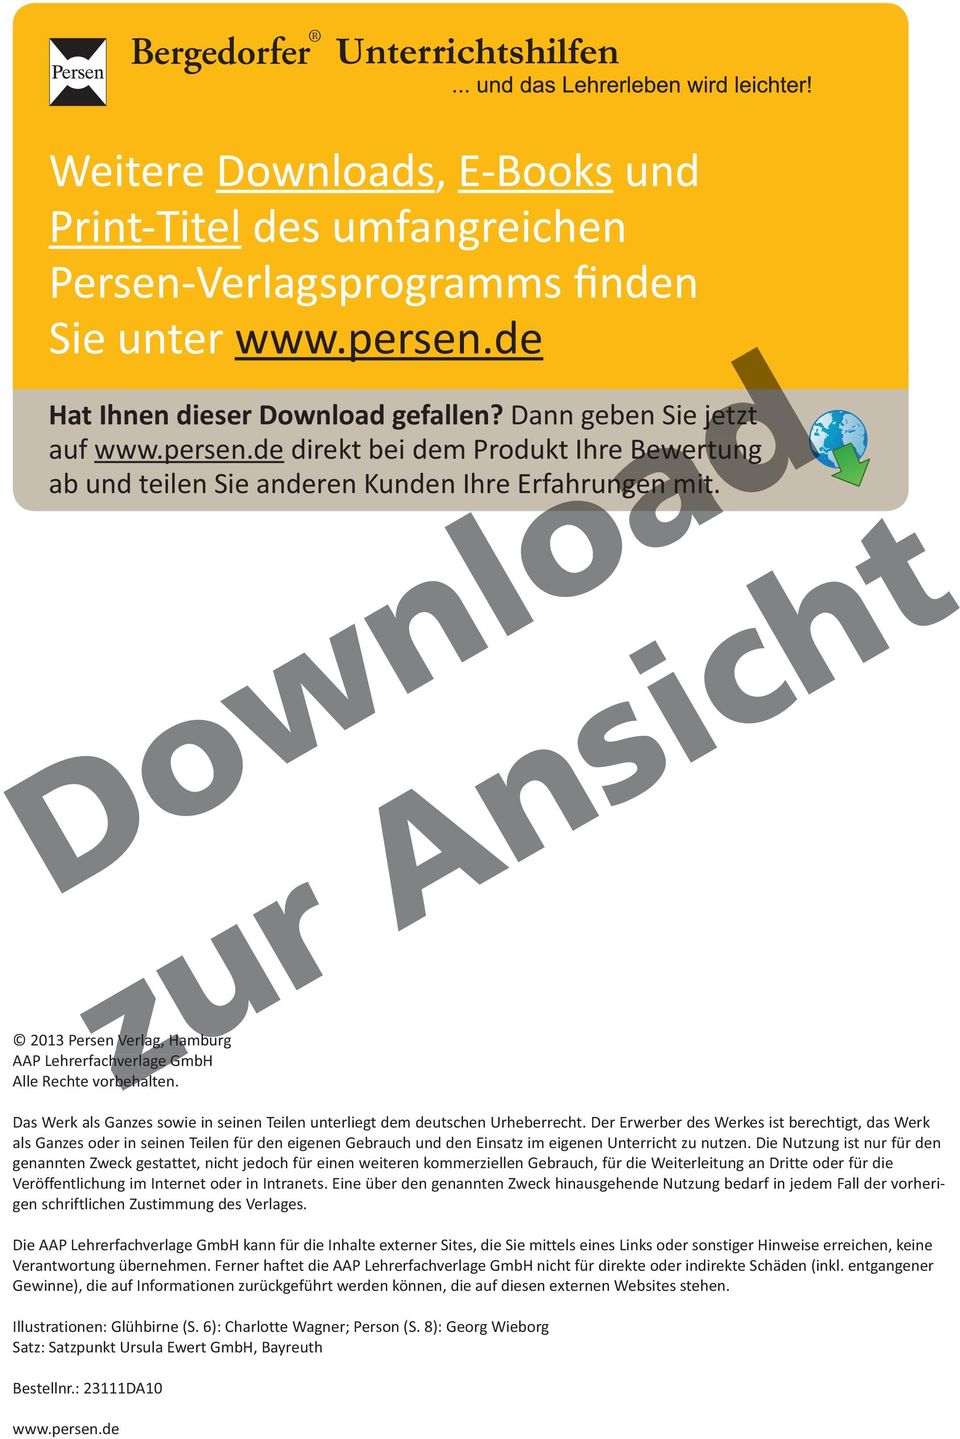 2013 Persen Verlag, Hamburg AAP Lehrerfachverlage hverlage GmbH Alle Rechte vorbehalten. Das Werk als Ganzes sowie in seinen Teilen unterliegt dem deutschen Urheberrecht.